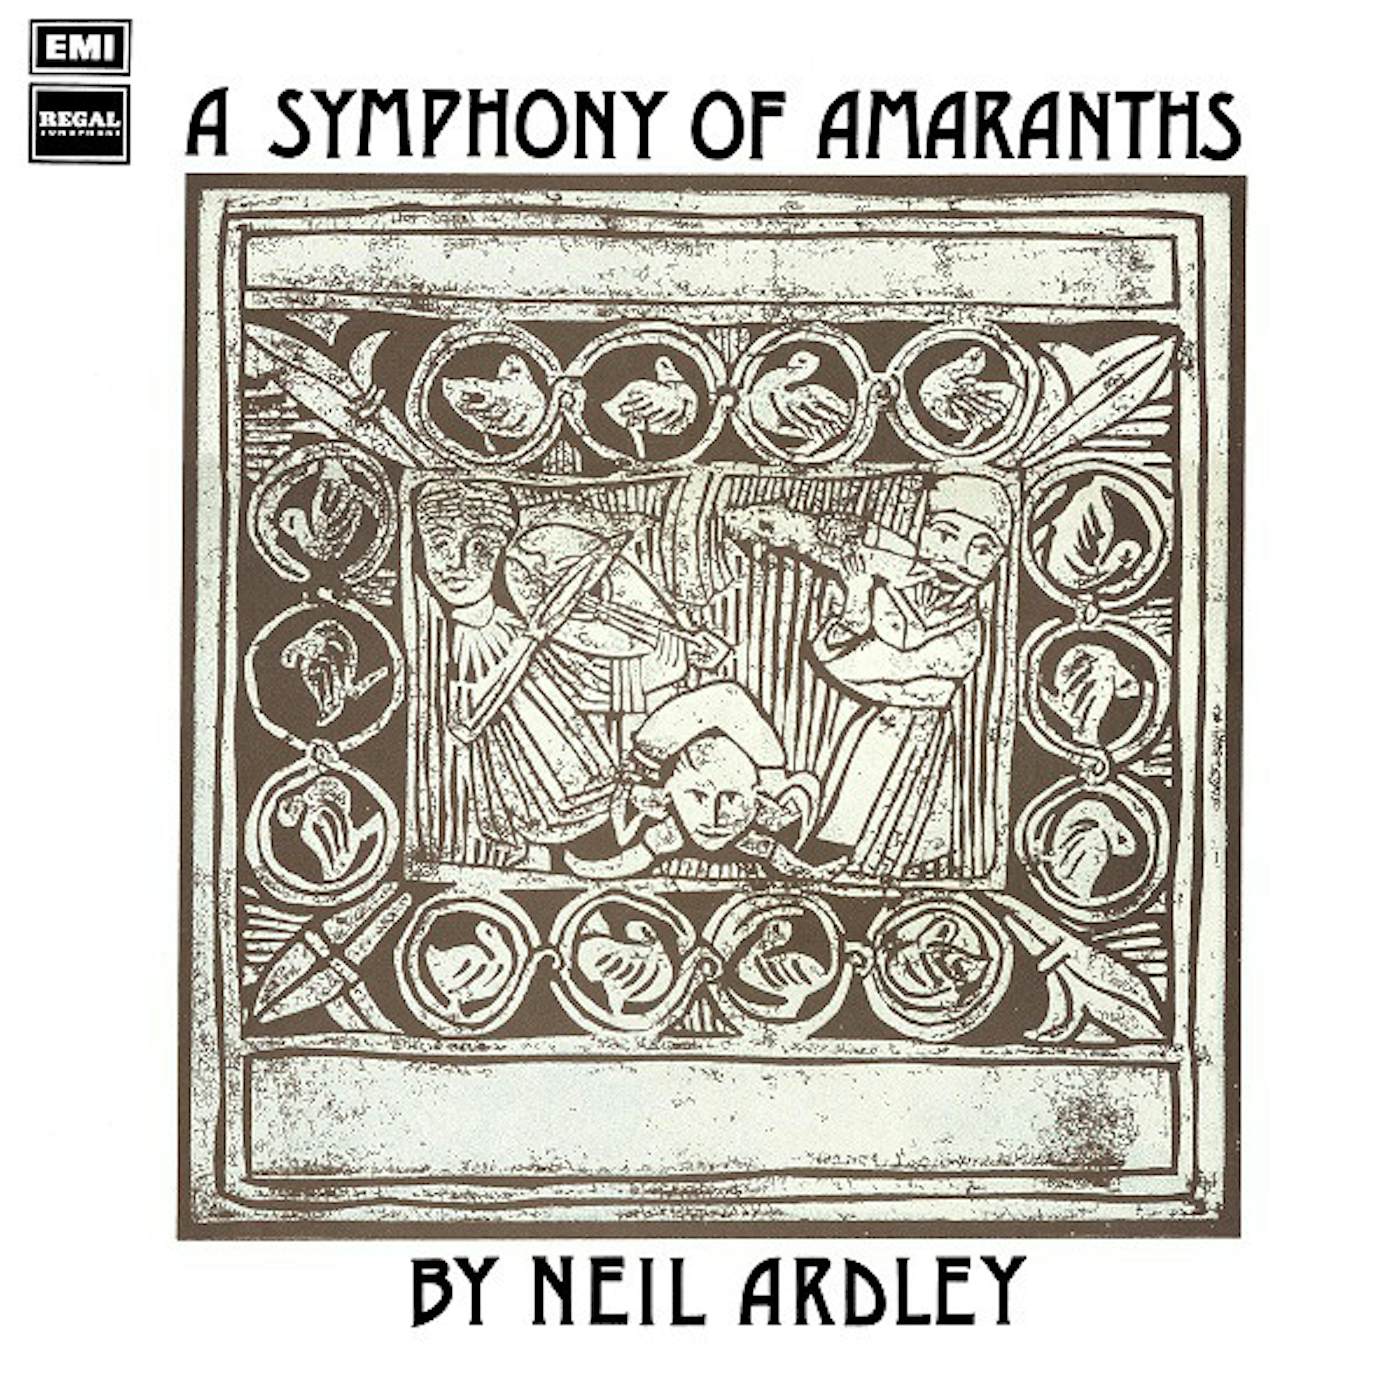 Neil Ardley SYMPHONY OF AMARANTHS Vinyl Record